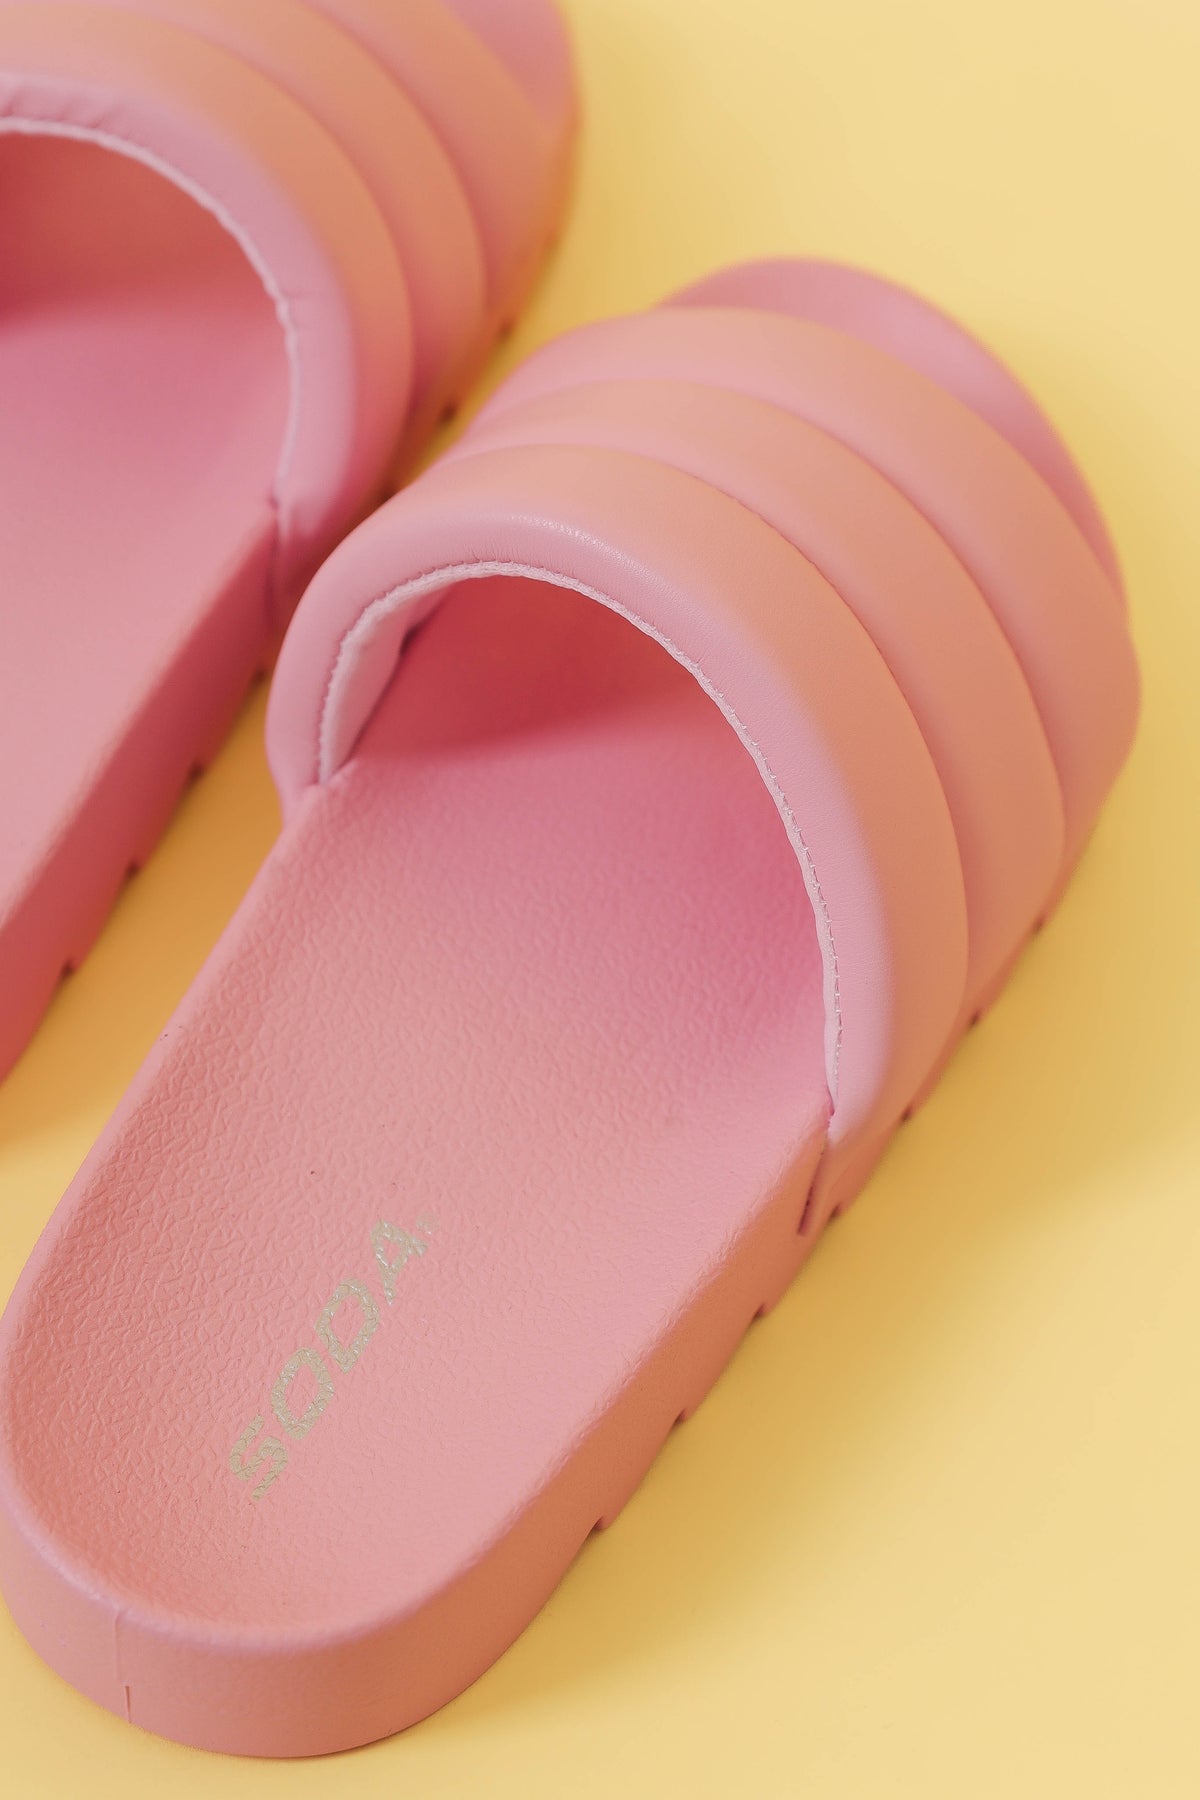 Pillow Slides™ - Women's: Pink